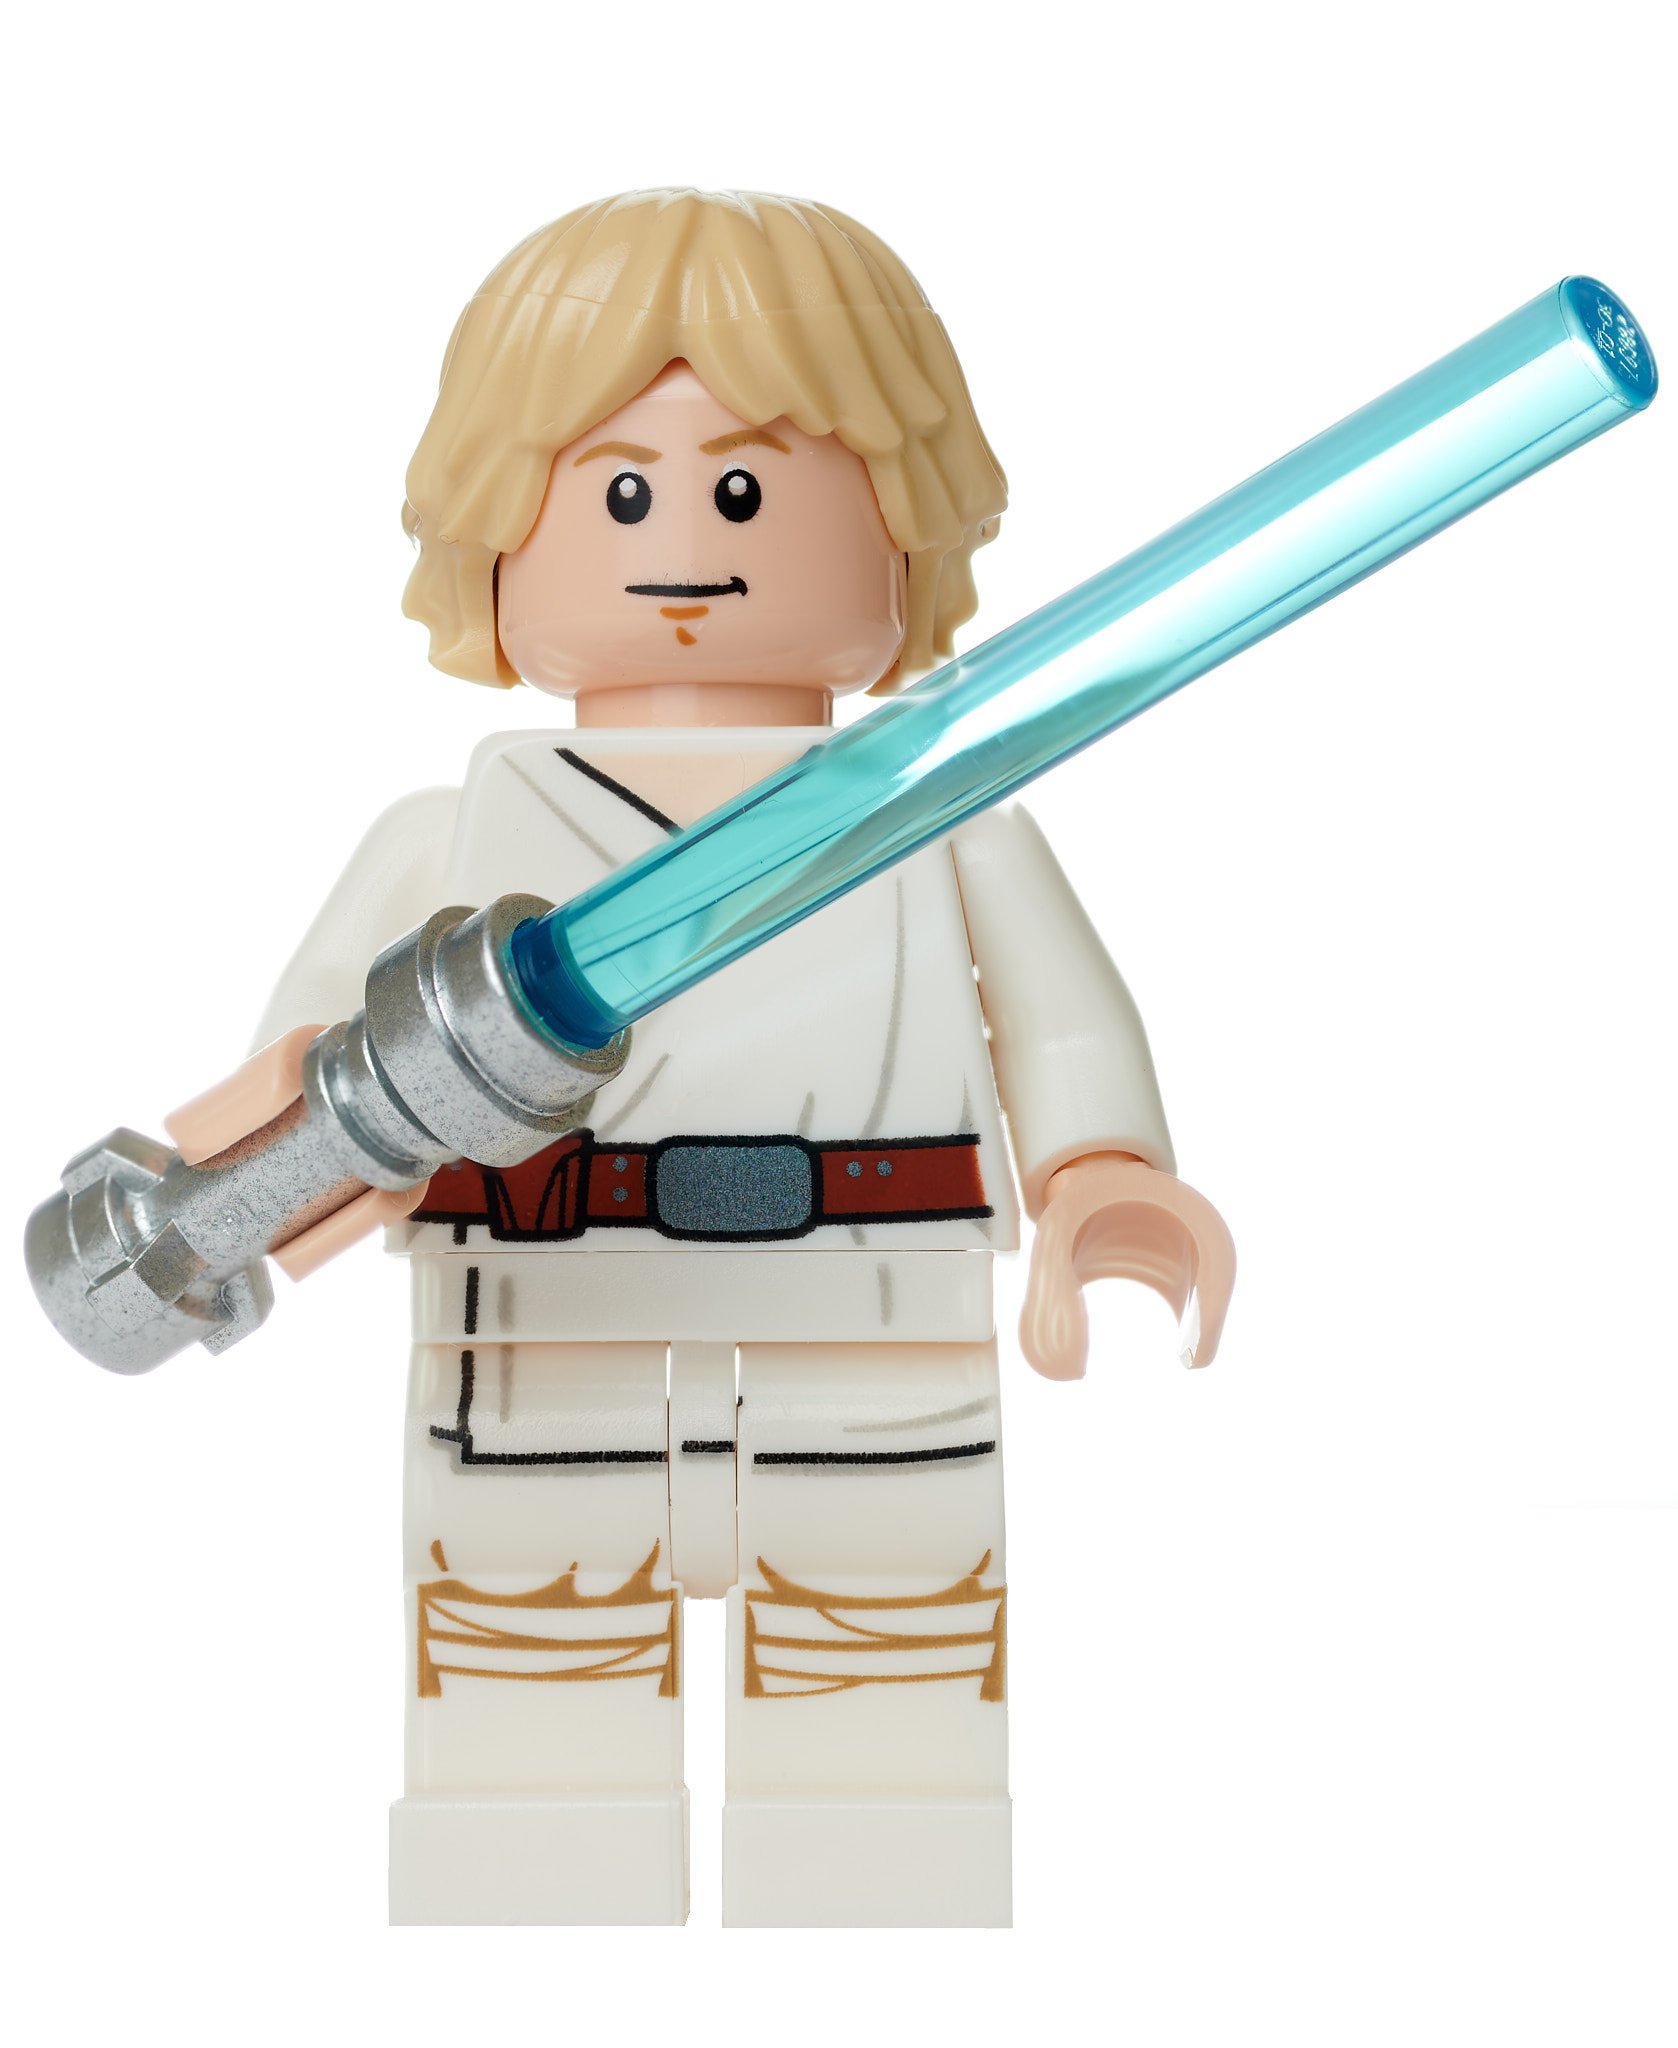 LEGO Star Wars Luke Skywalker Timeline